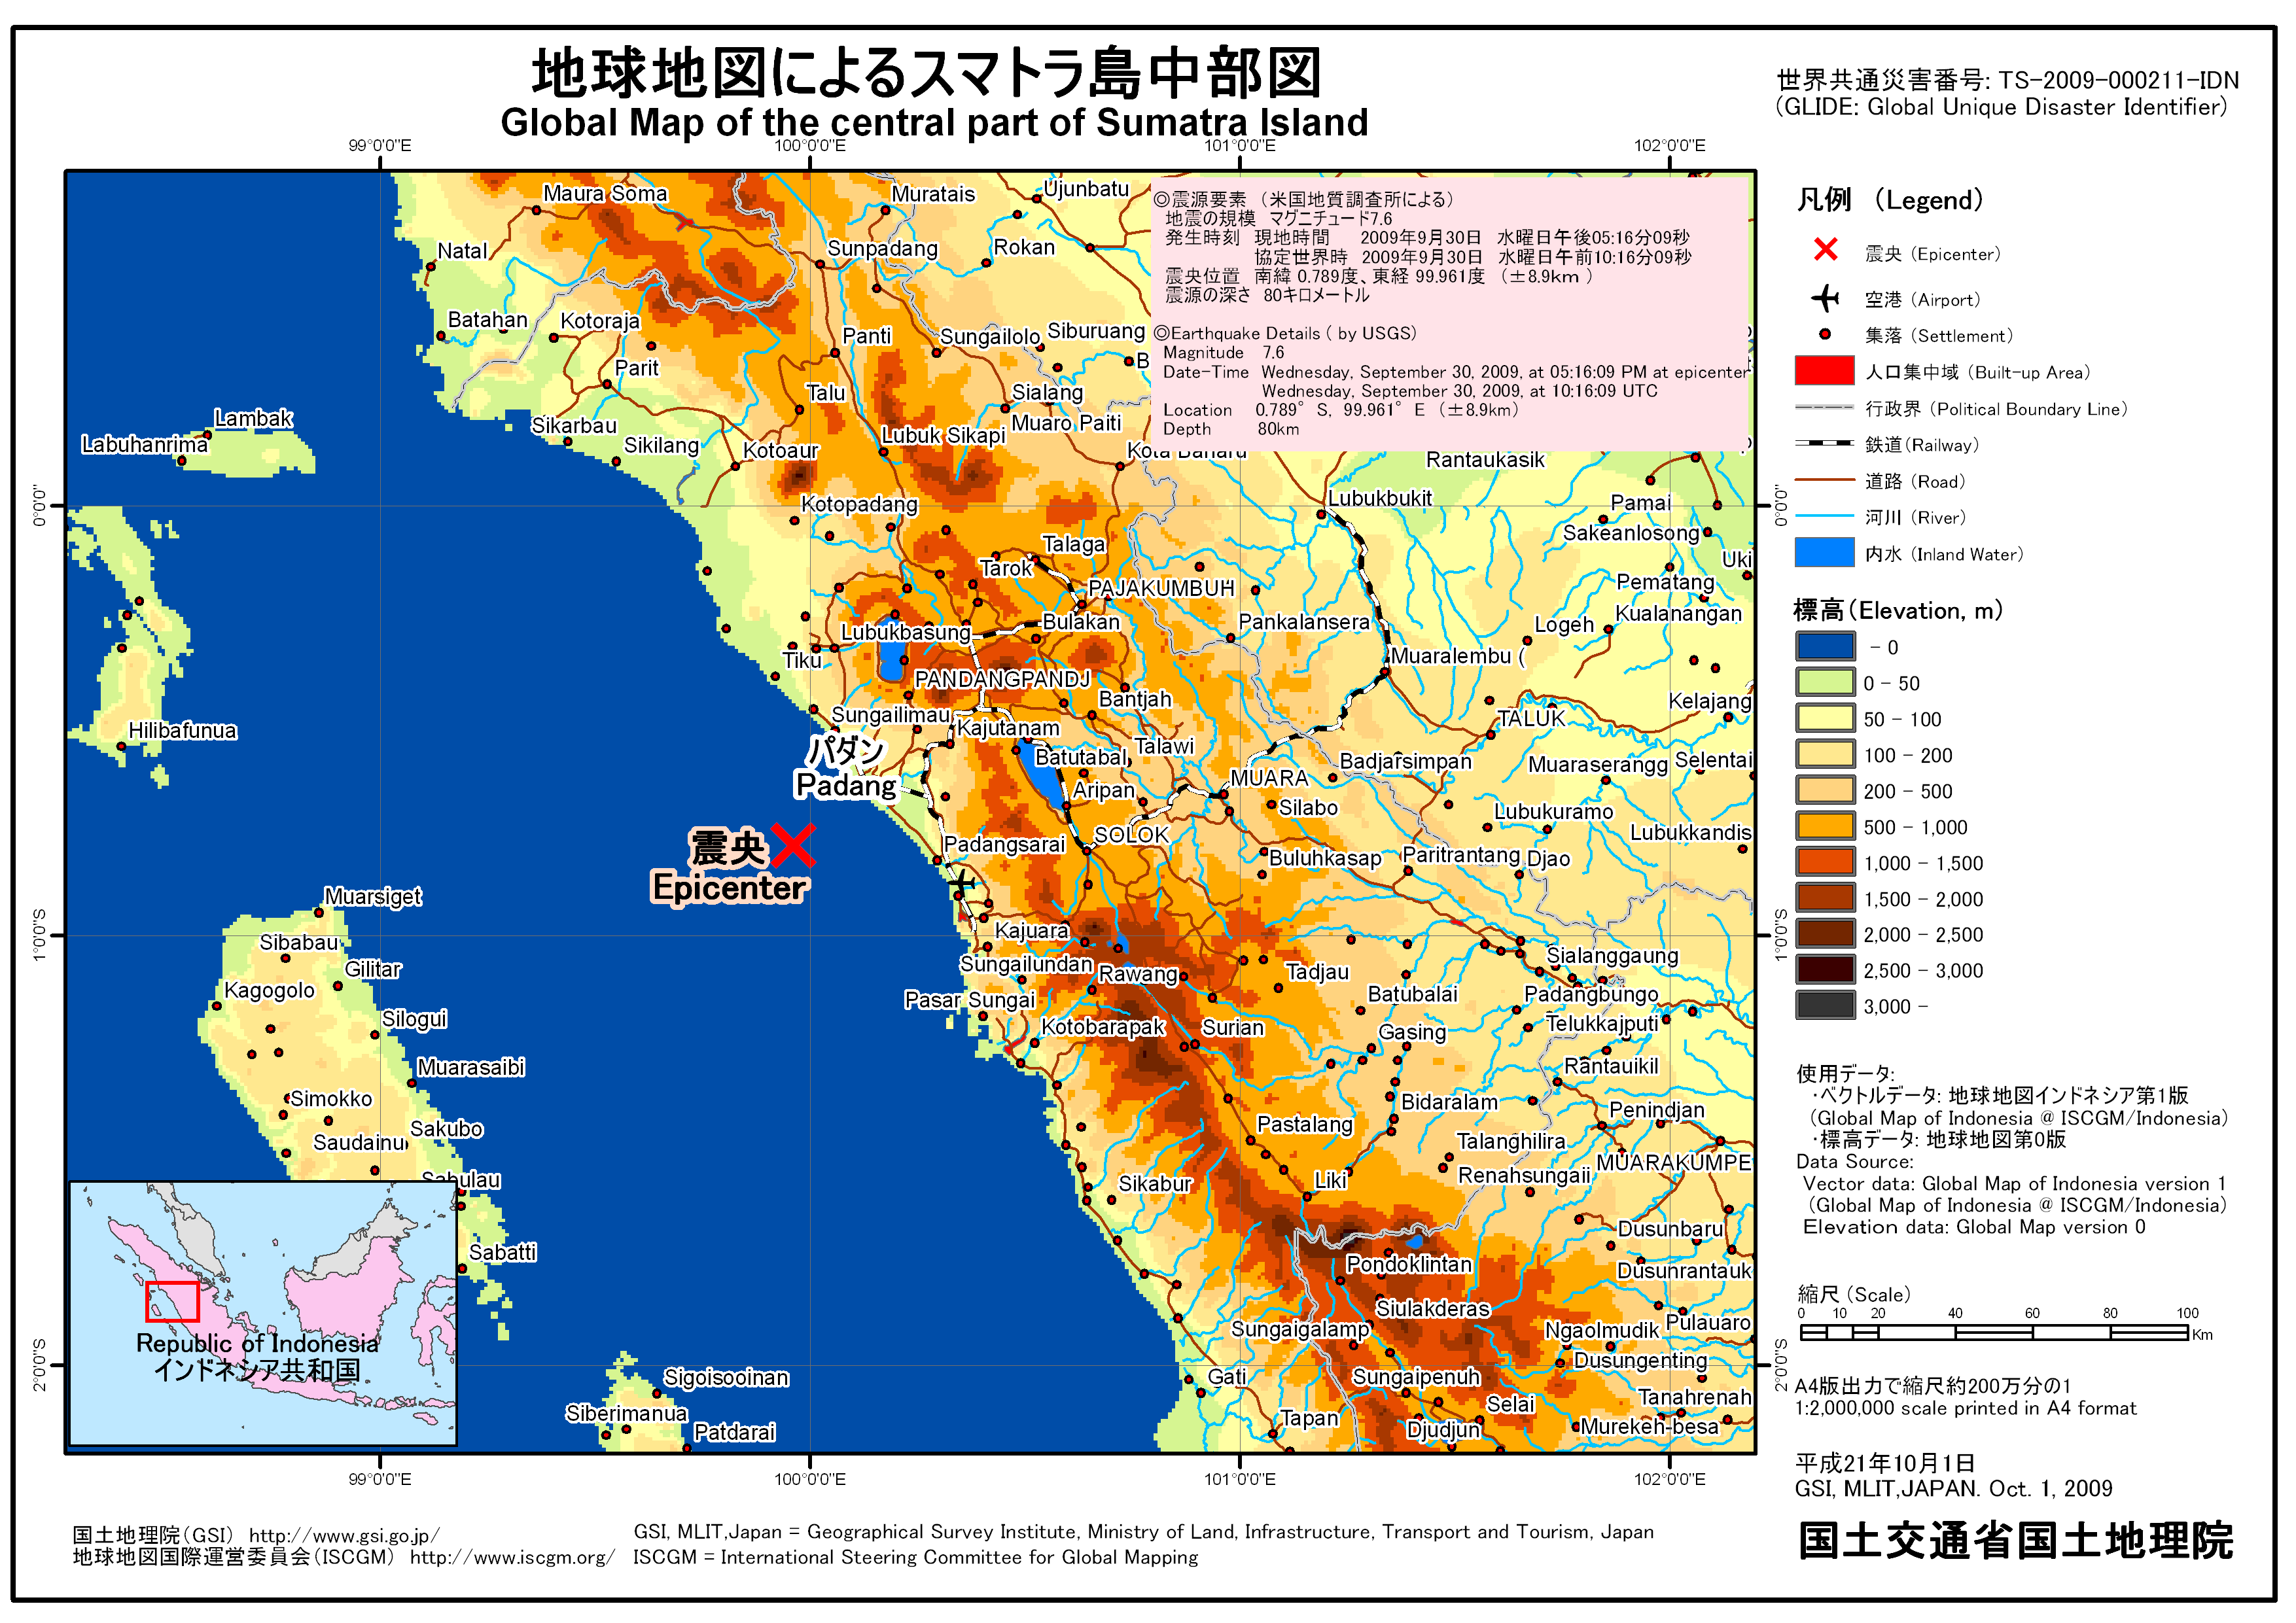 インドネシア スマトラ島中部の地震 平成21年10月 国土地理院